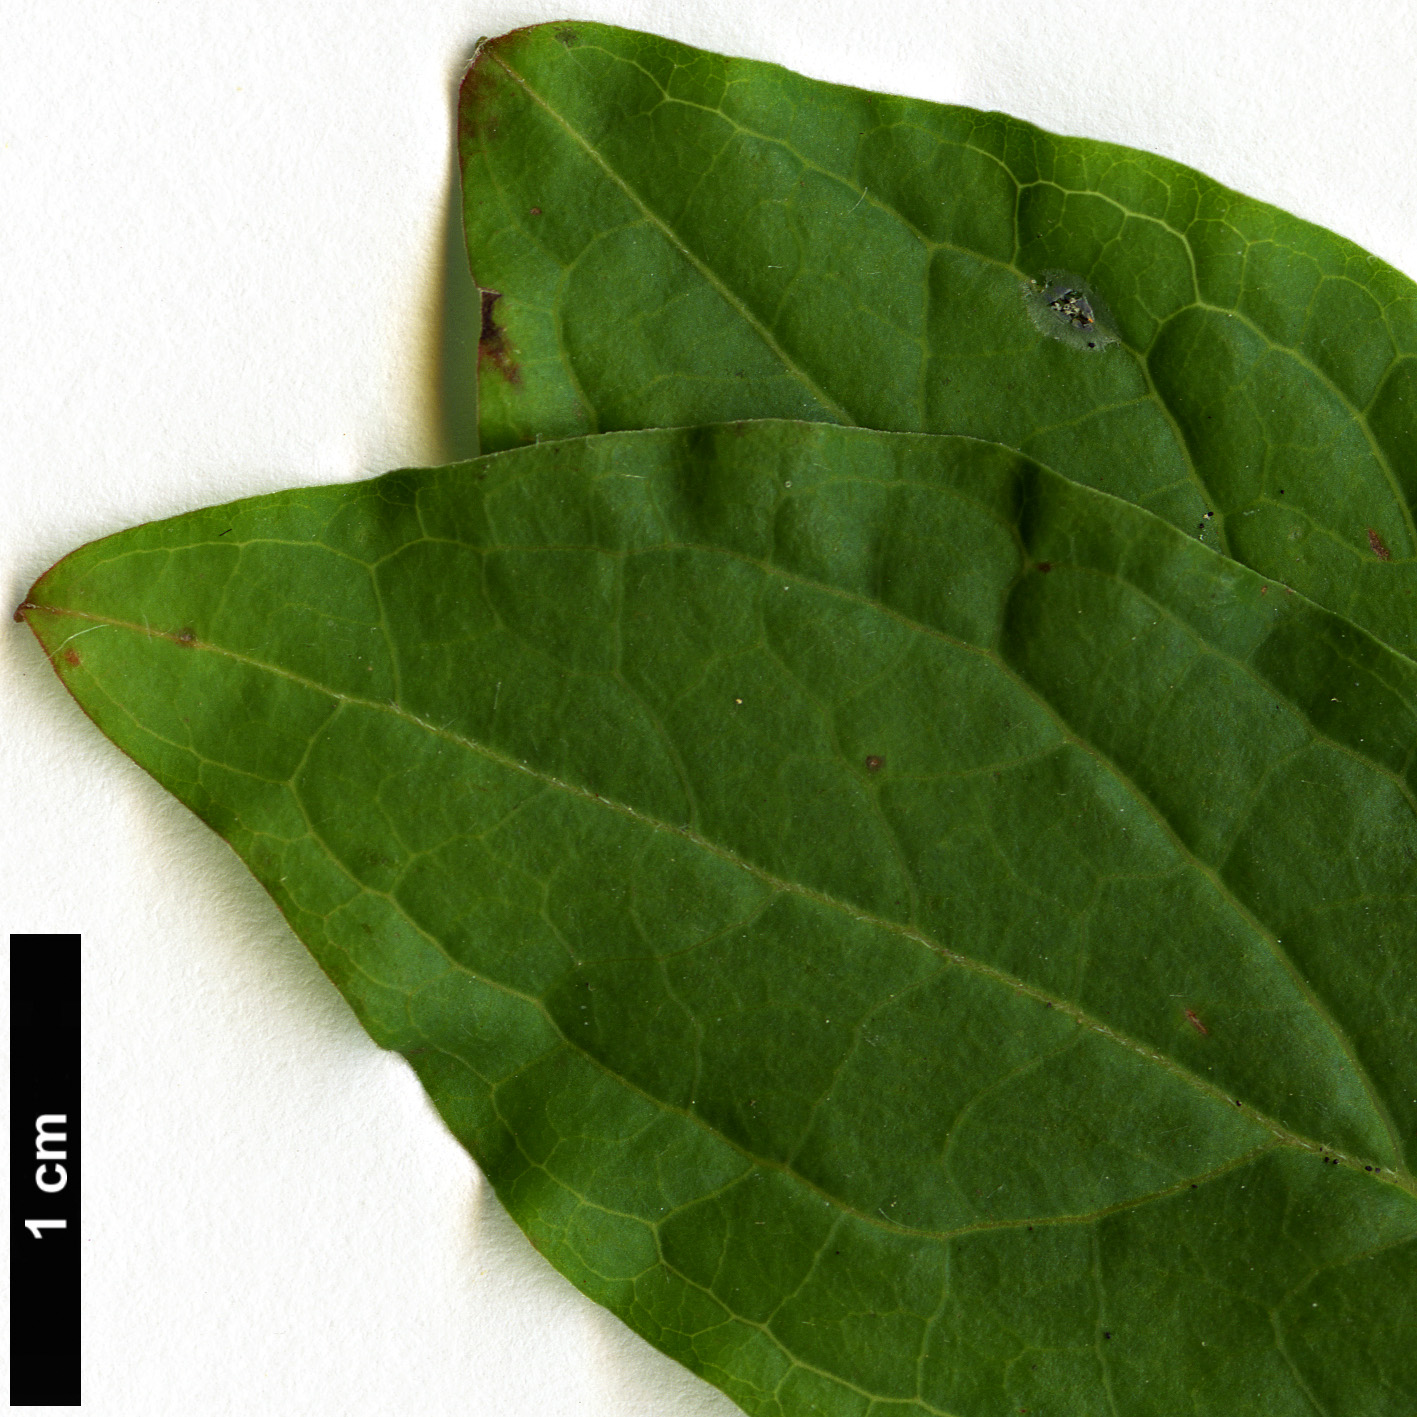 High resolution image: Family: Ericaceae - Genus: Ellliottia - Taxon: paniculata